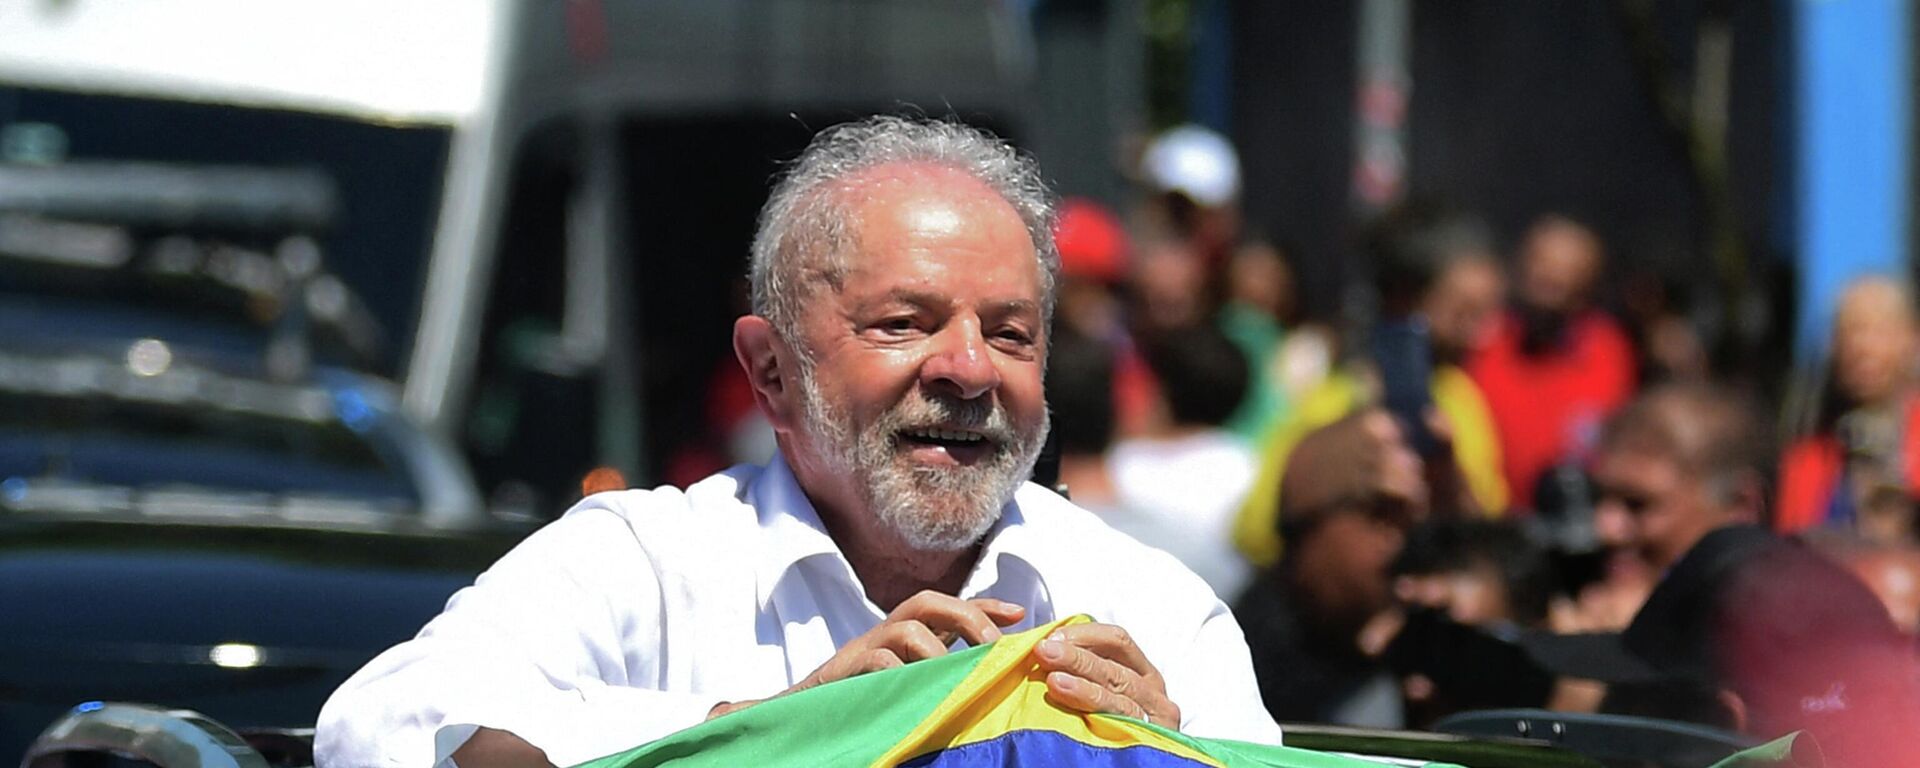 Luiz Inácio Lula da Silva ganó las elecciones presidenciales en Brasil (2022) - Sputnik Mundo, 1920, 31.10.2022